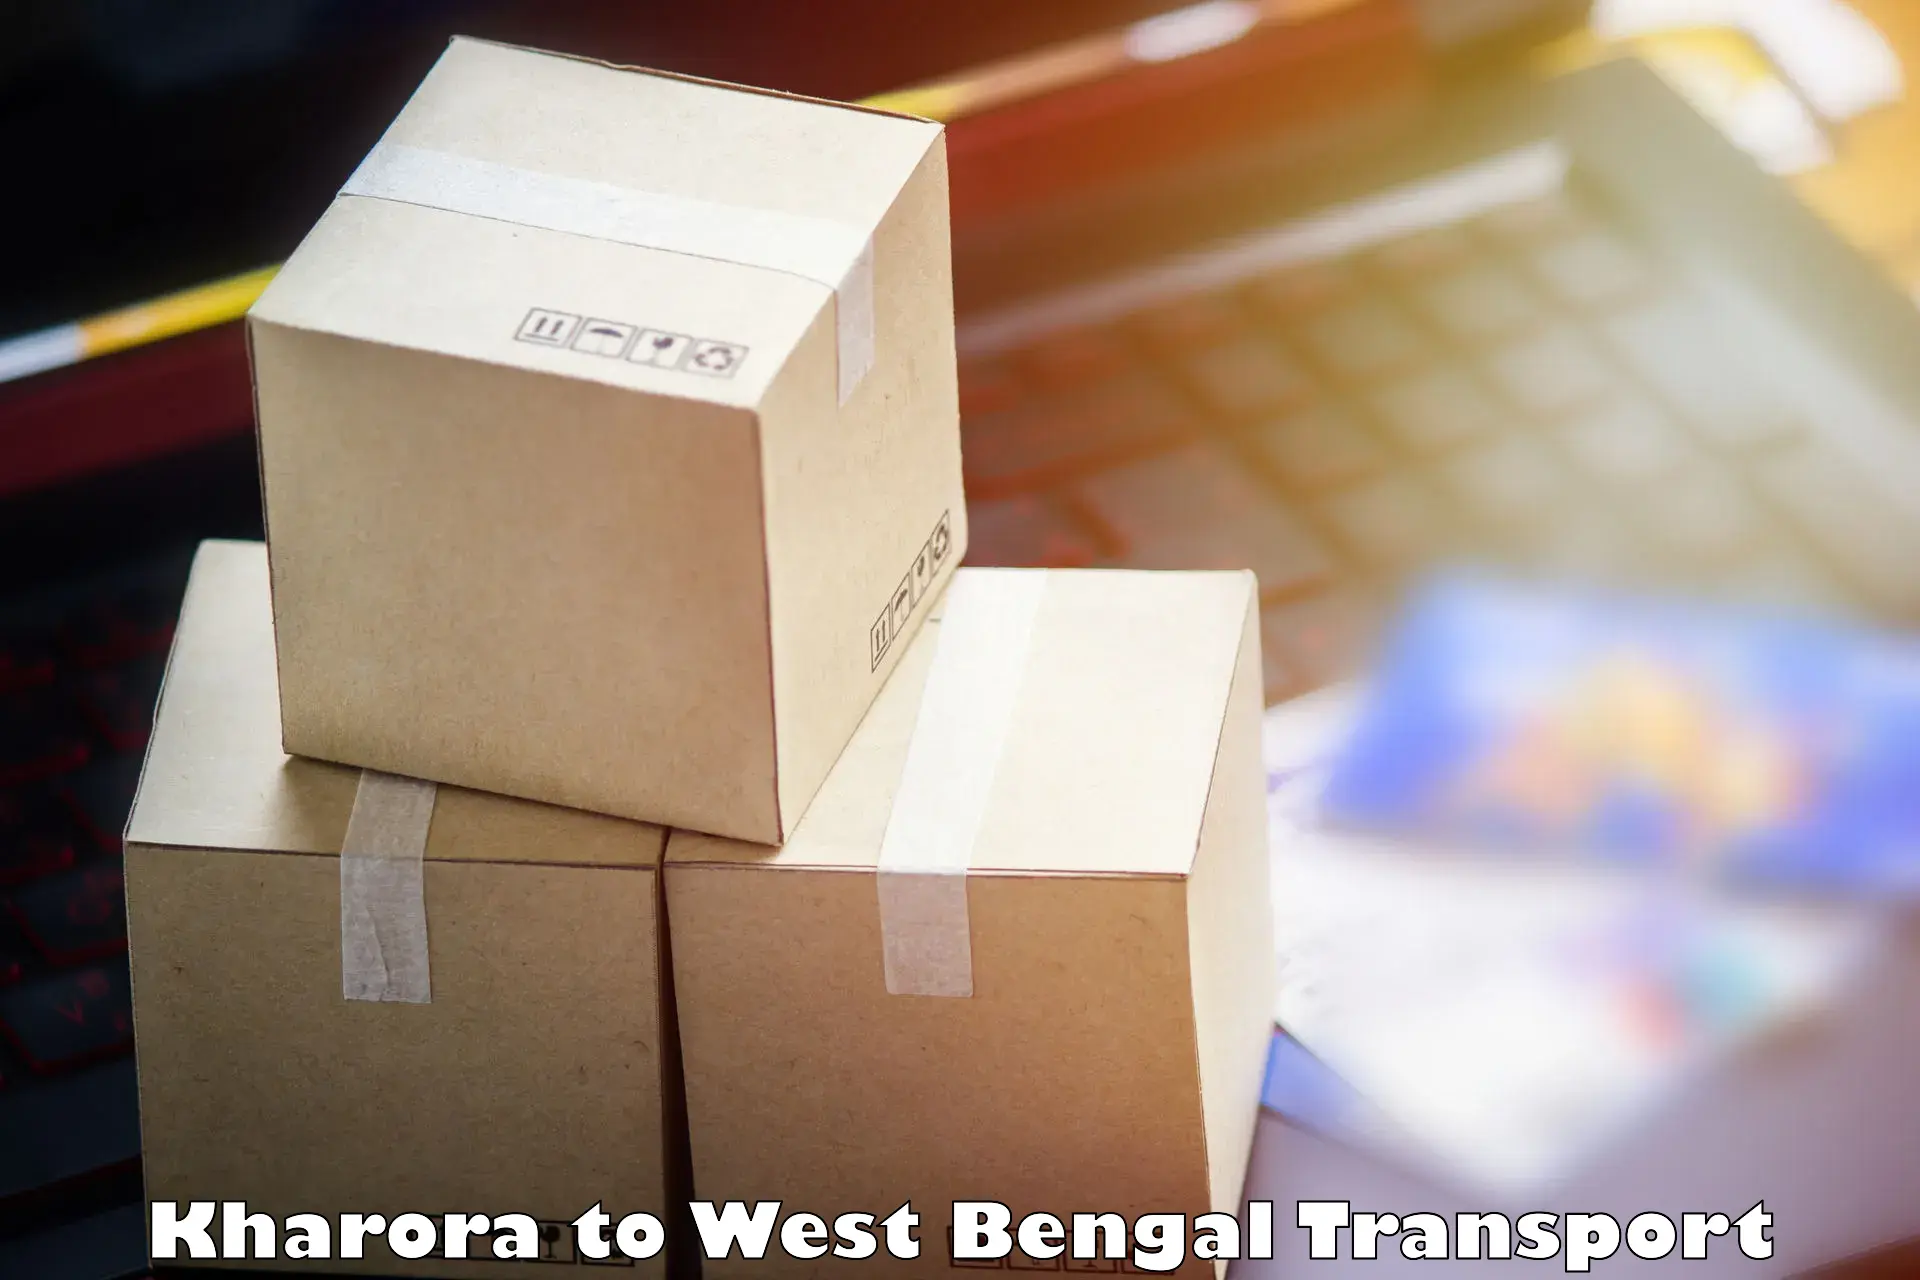 Shipping services Kharora to Kolkata